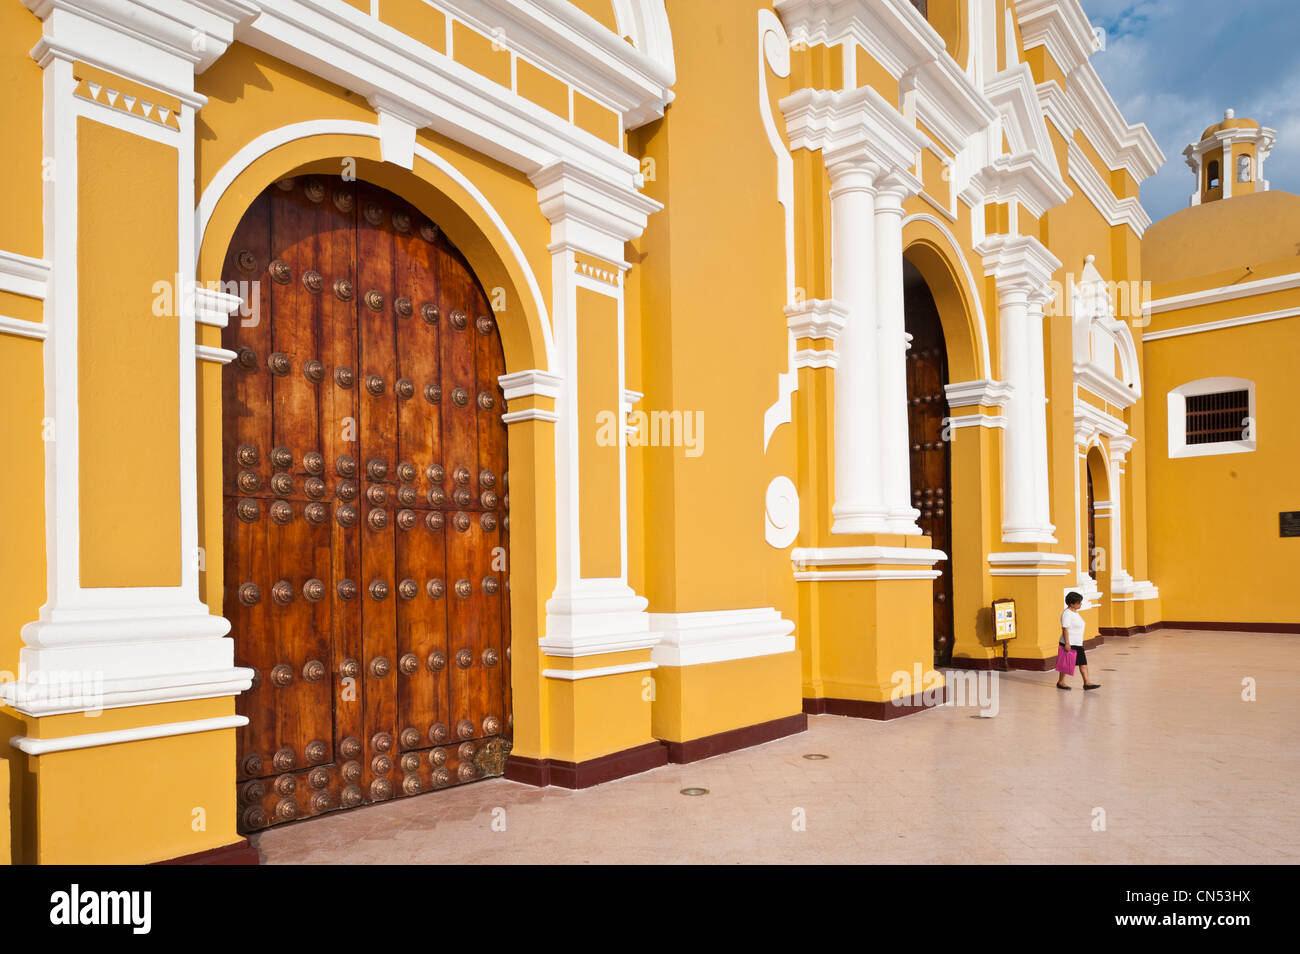 Peru, La Libertad province, north coast, Trujillo, Plaza de Armas, the cathedral Stock Photo